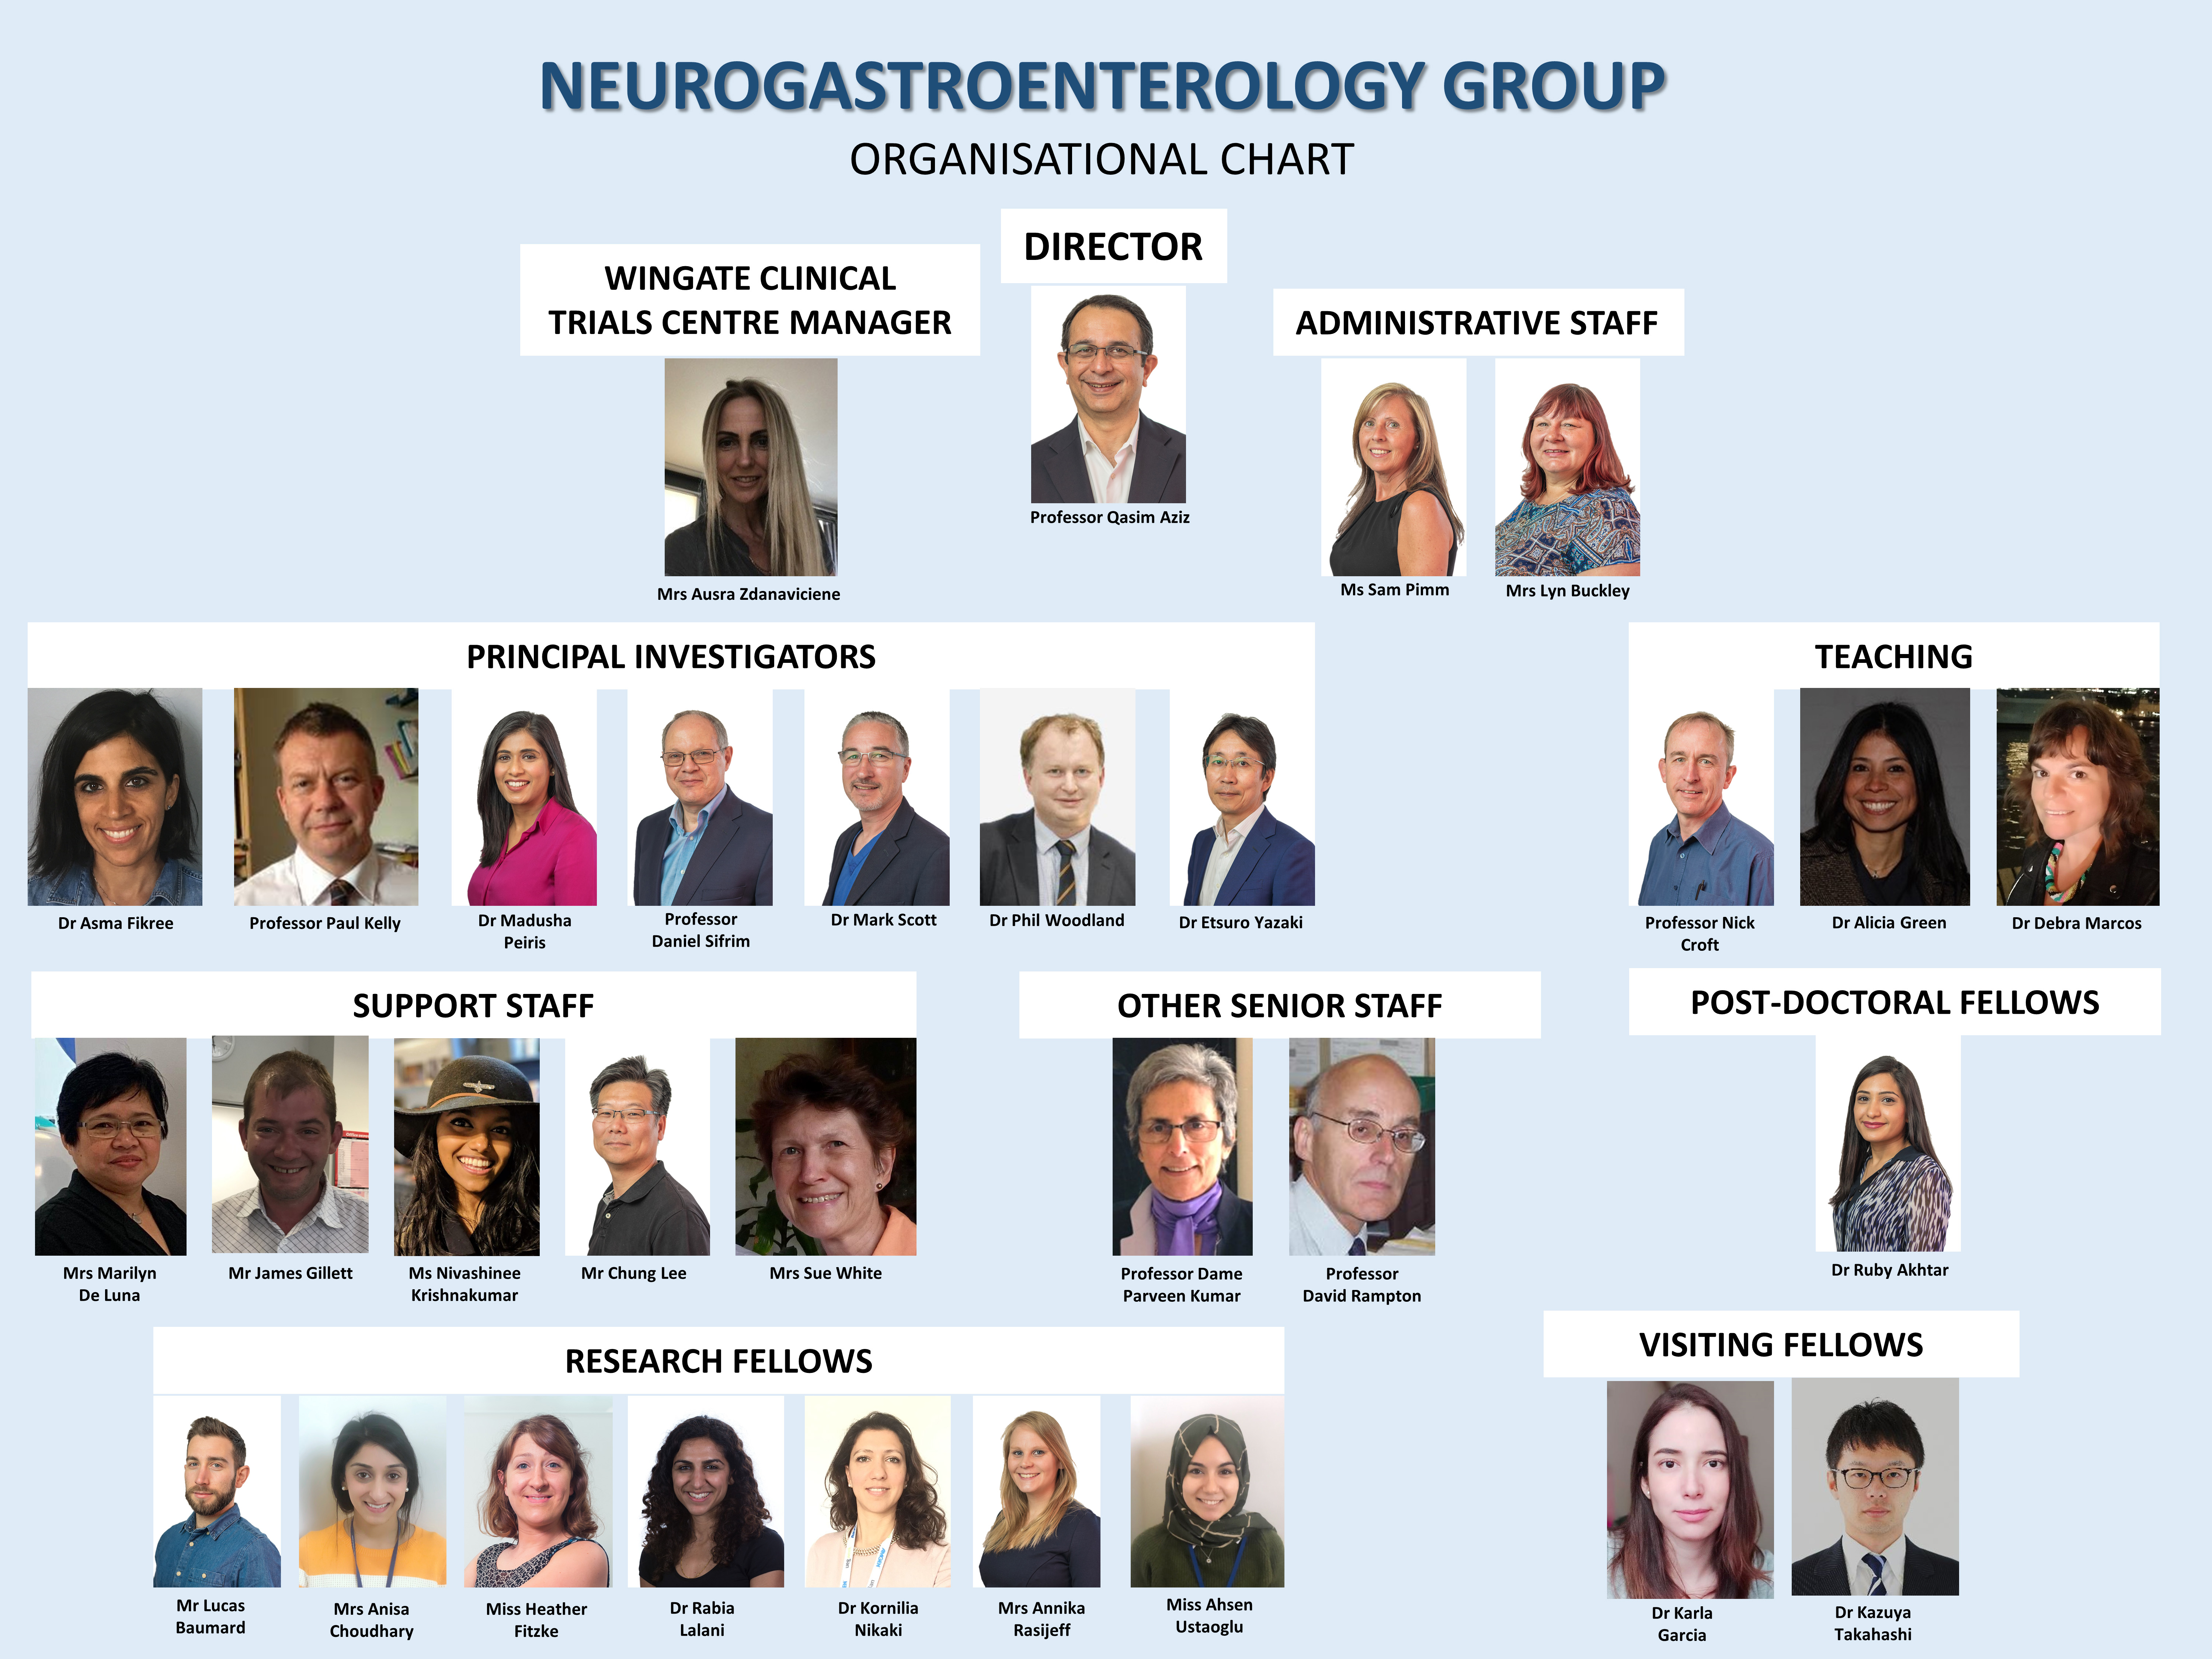 Neurogastroenterology Group staff list